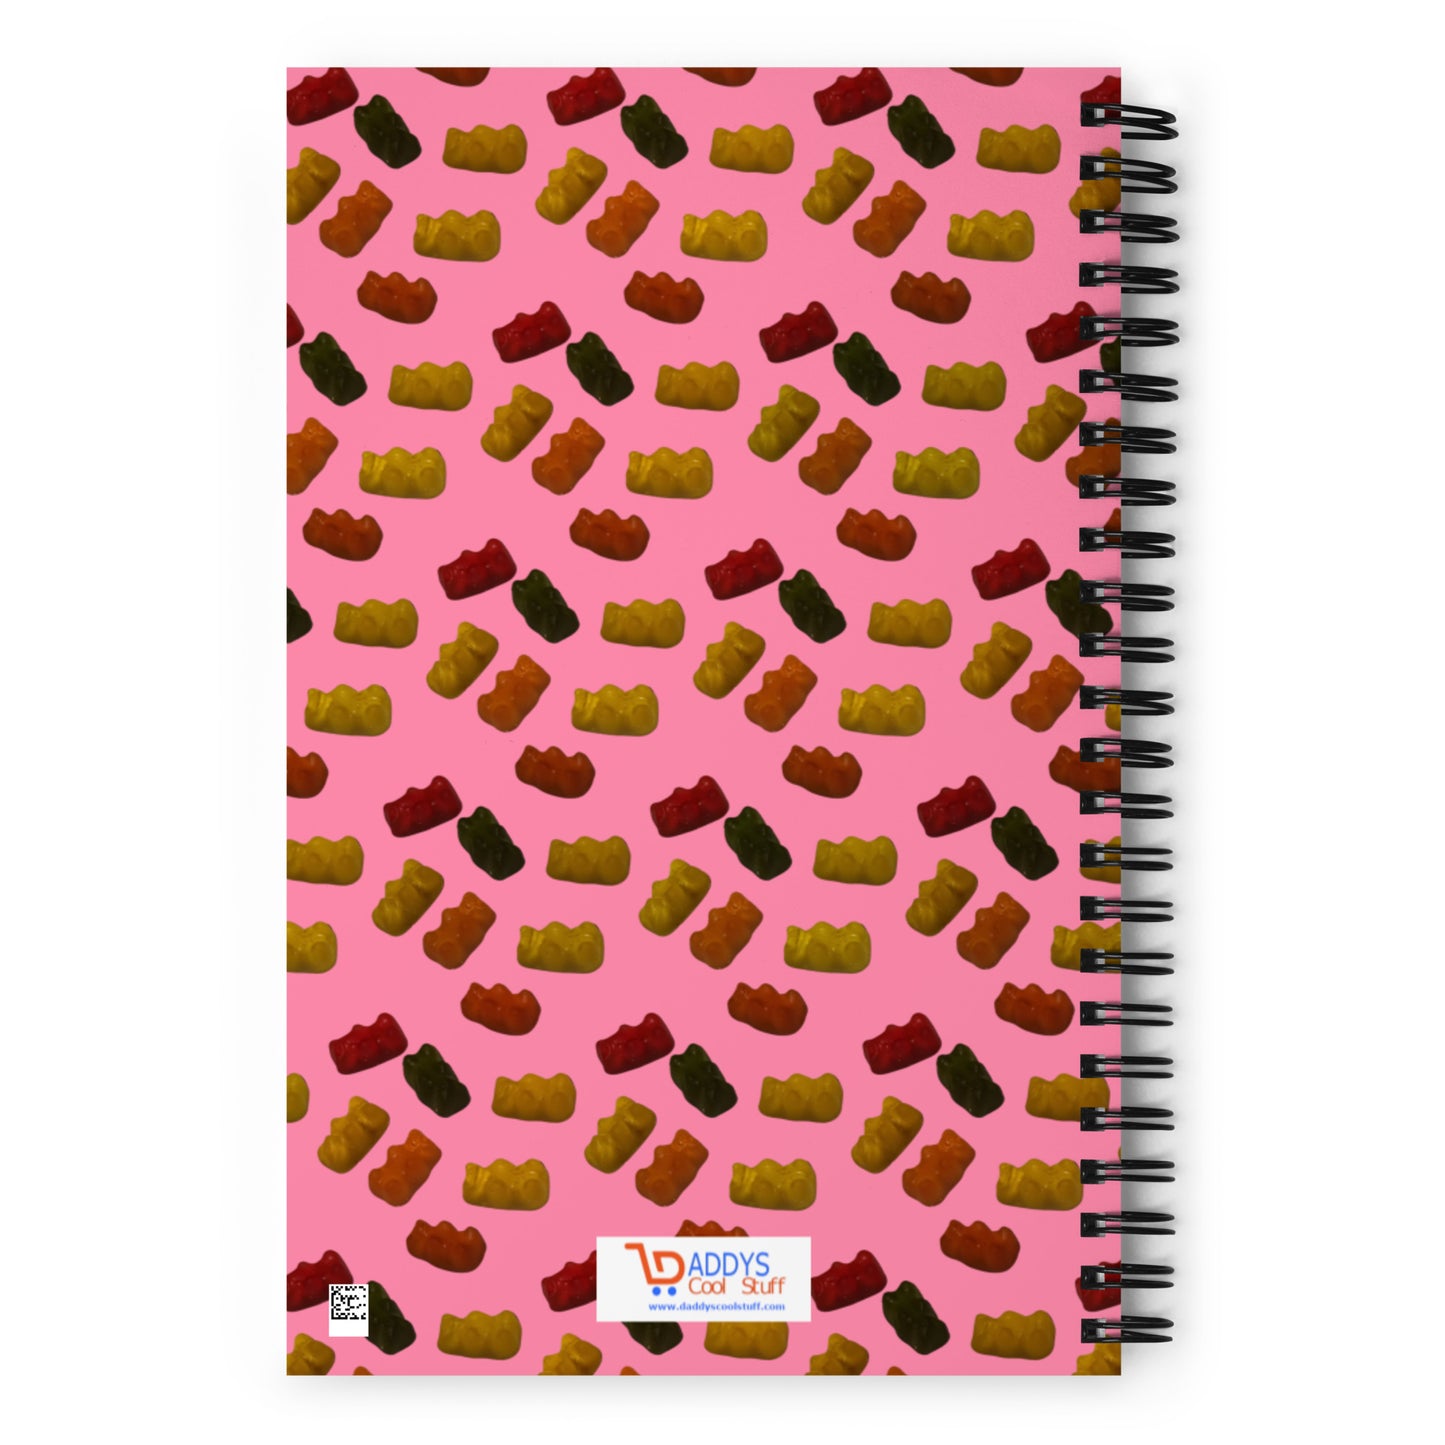 Gummy Bears -  Spiral notebook - pink